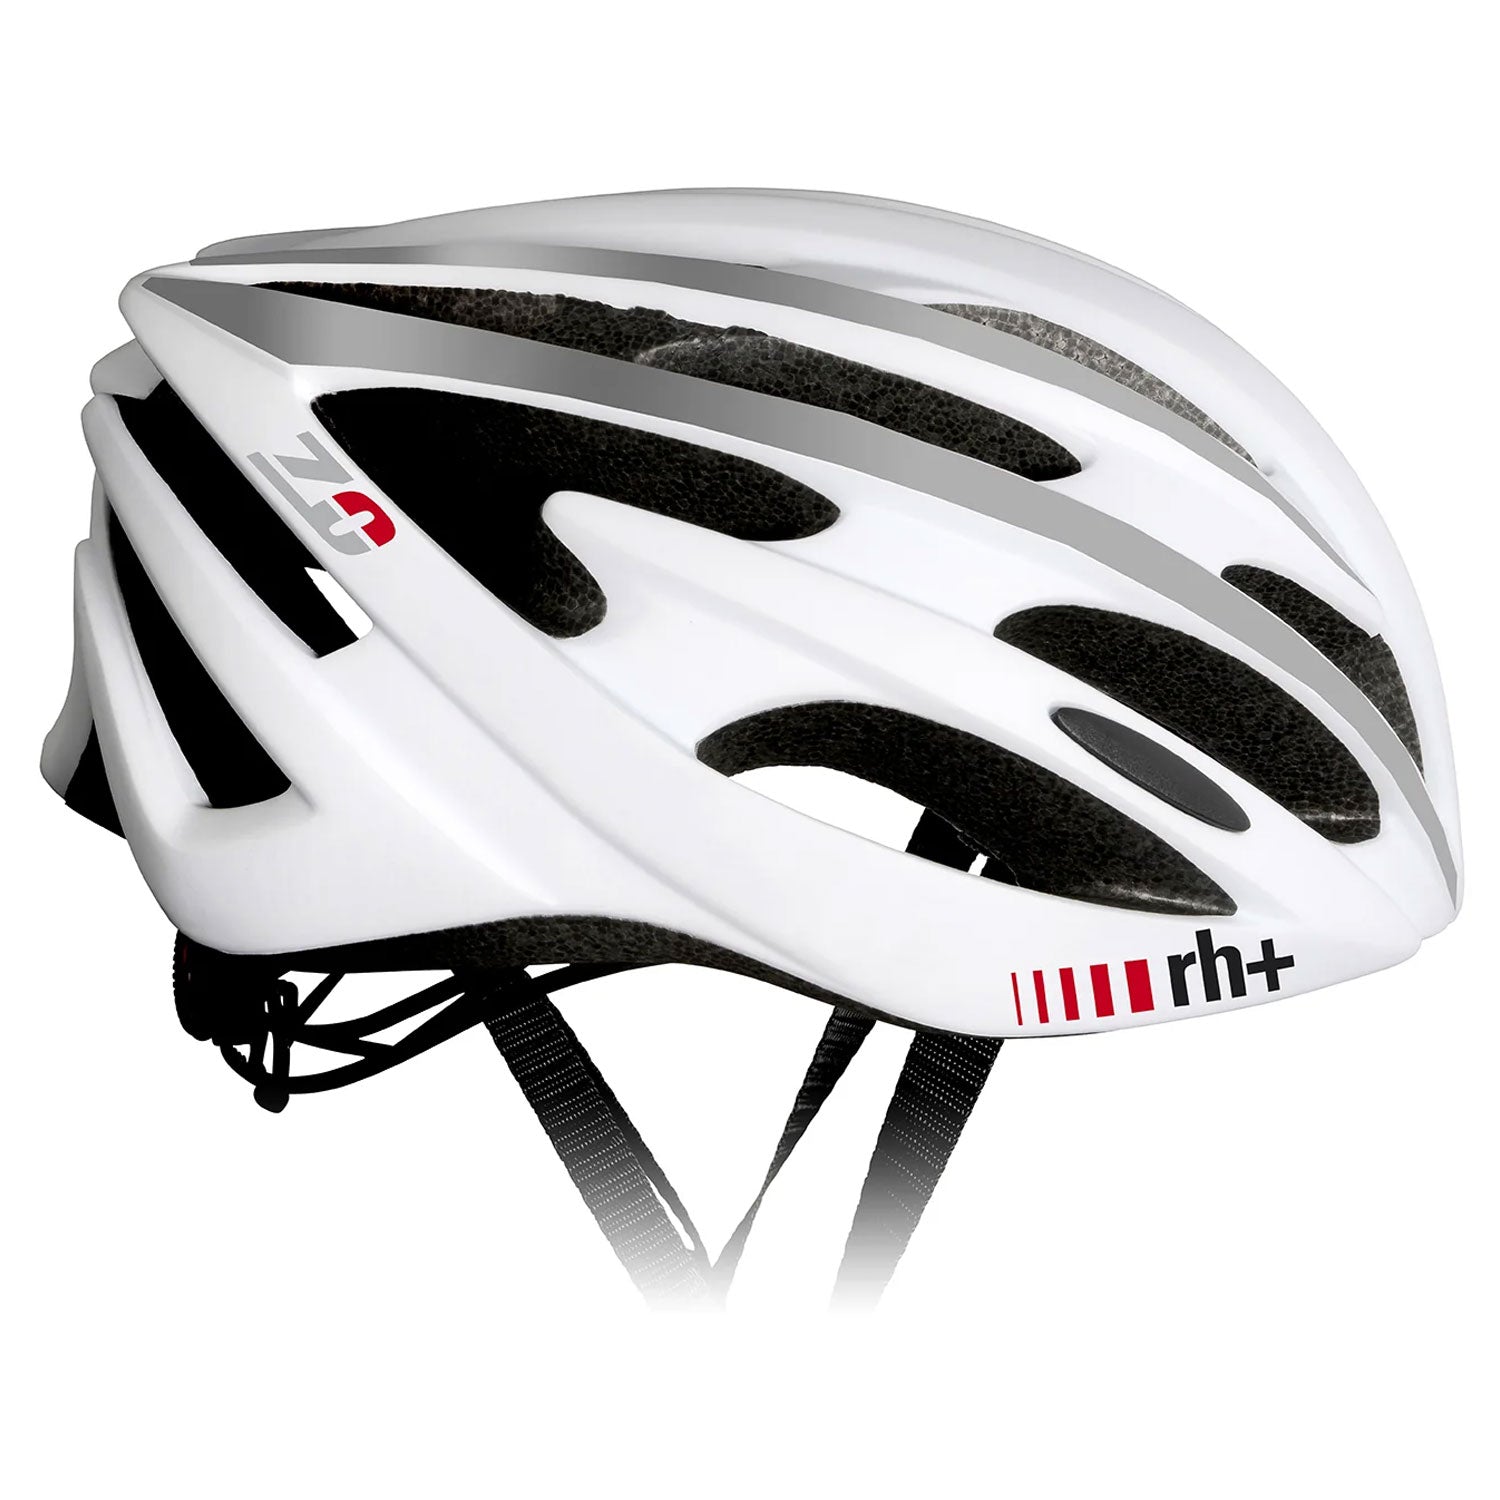 Rh+ Z Zero helmet - White